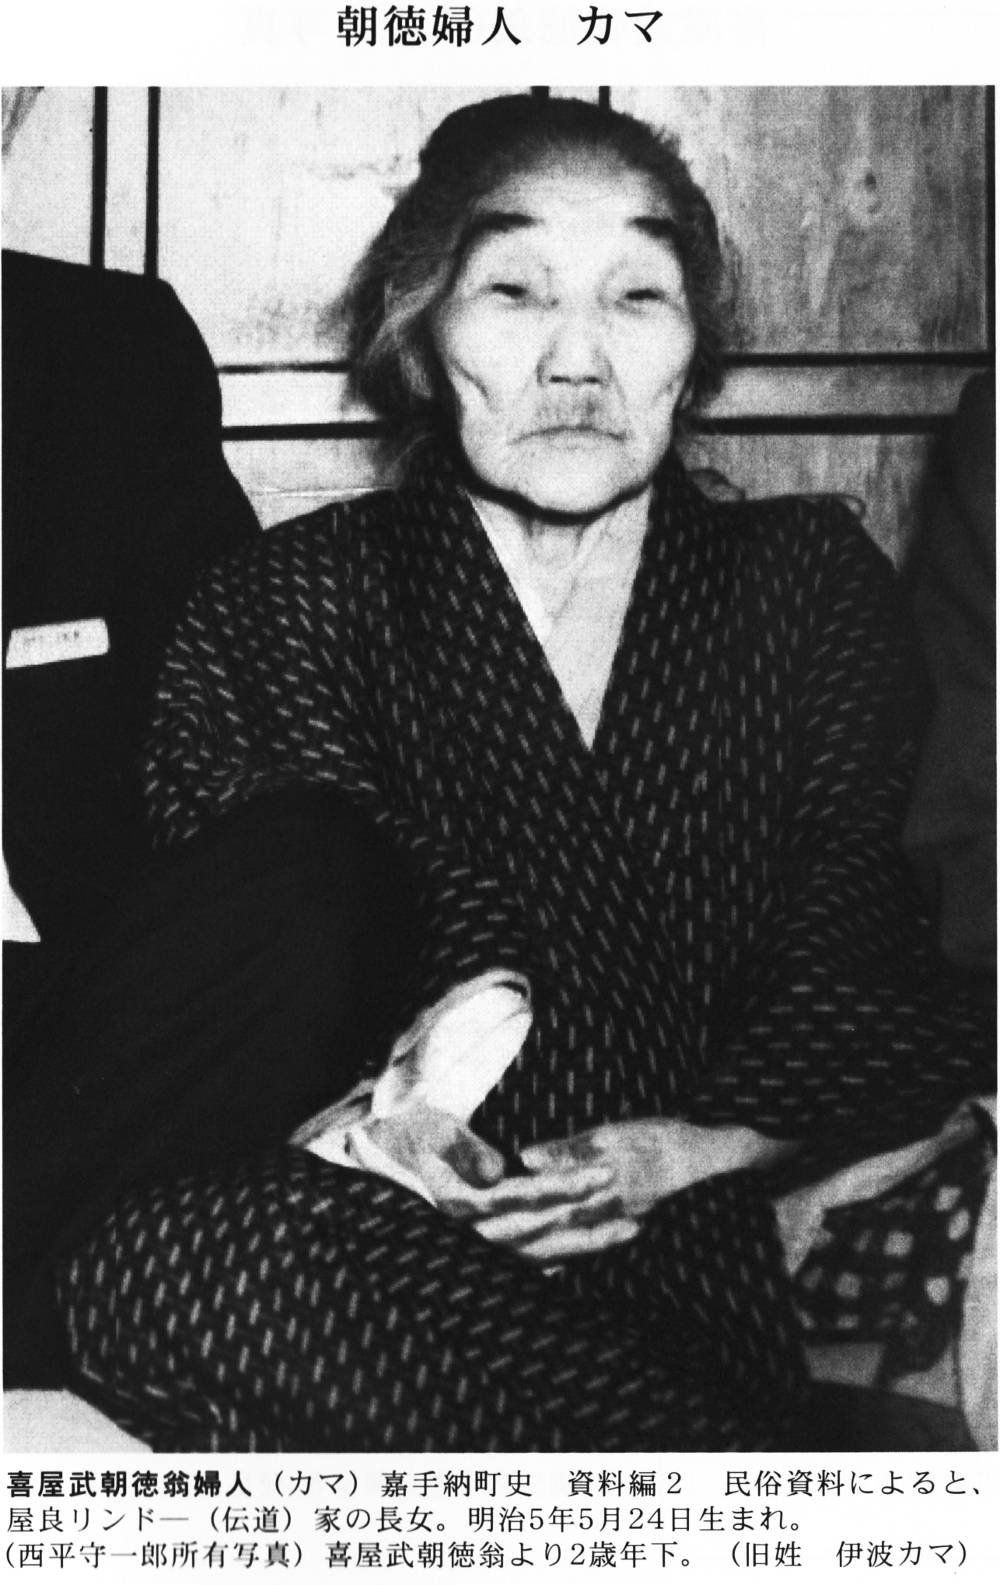 Kyan Chotoku's wife Kama.